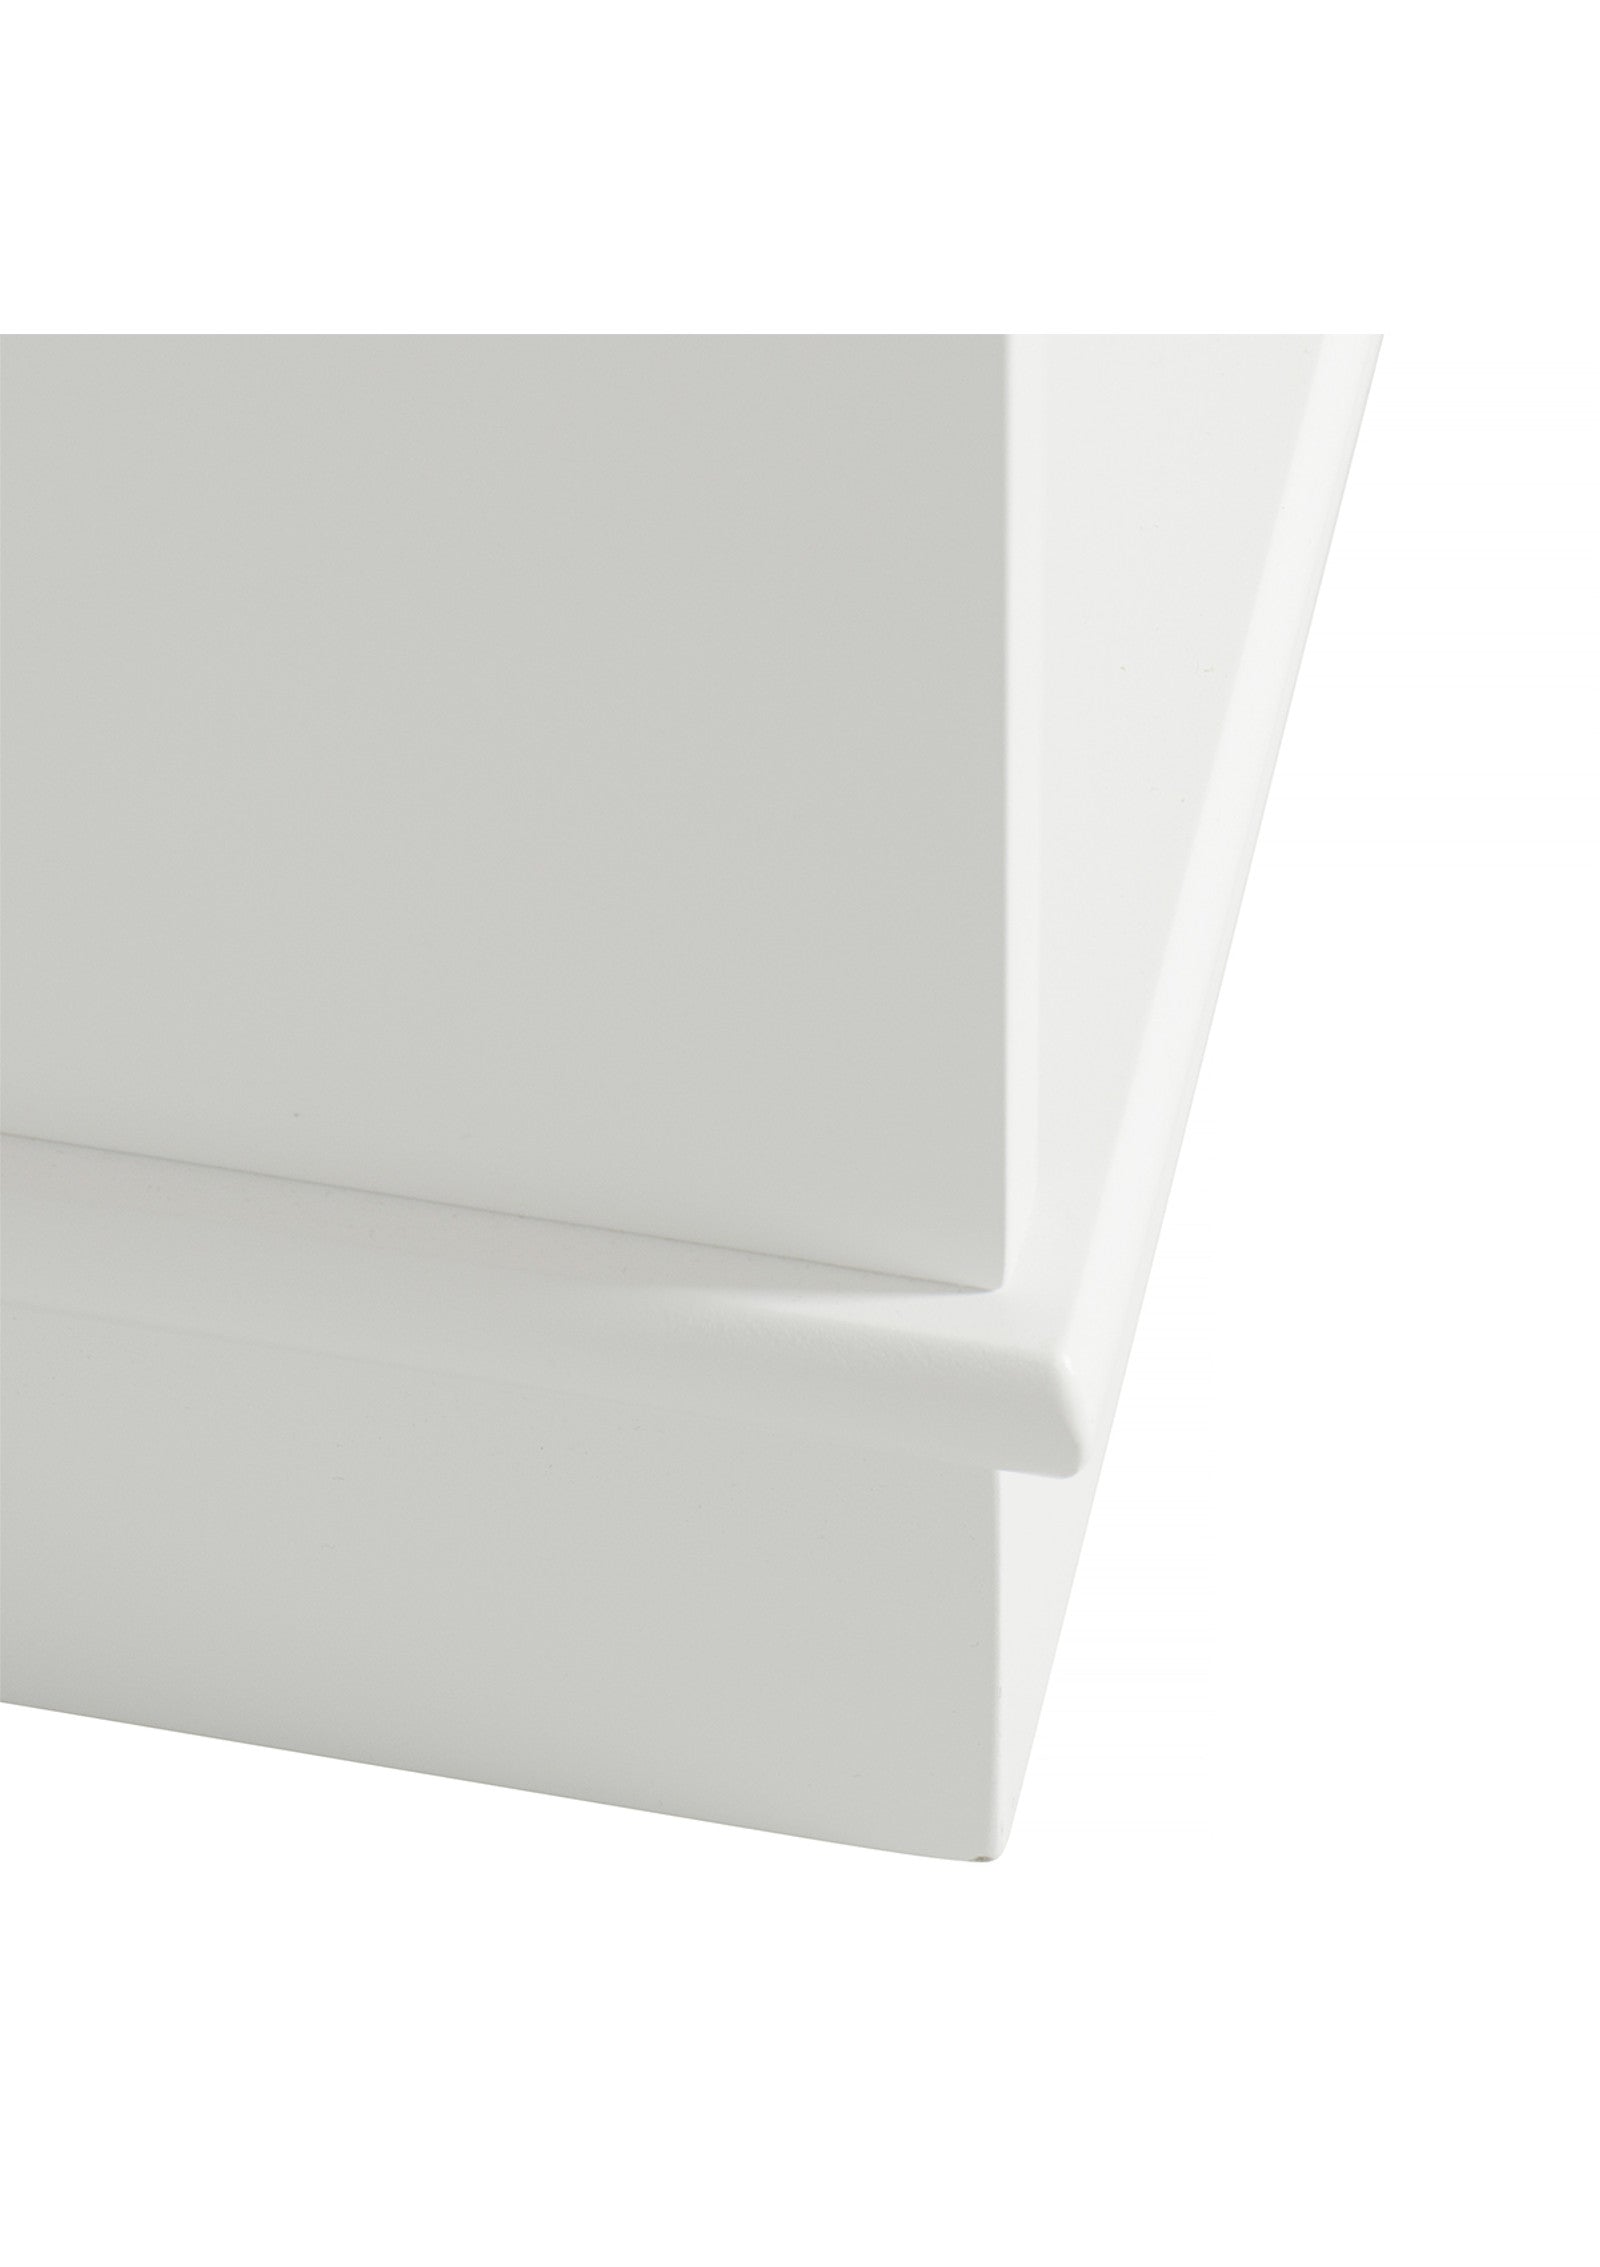 'Wood' Standregal horizontal 3 x 1 / weiß mit Sockel'Wood' Regal horizontal 3x1 mit Sockel weiß